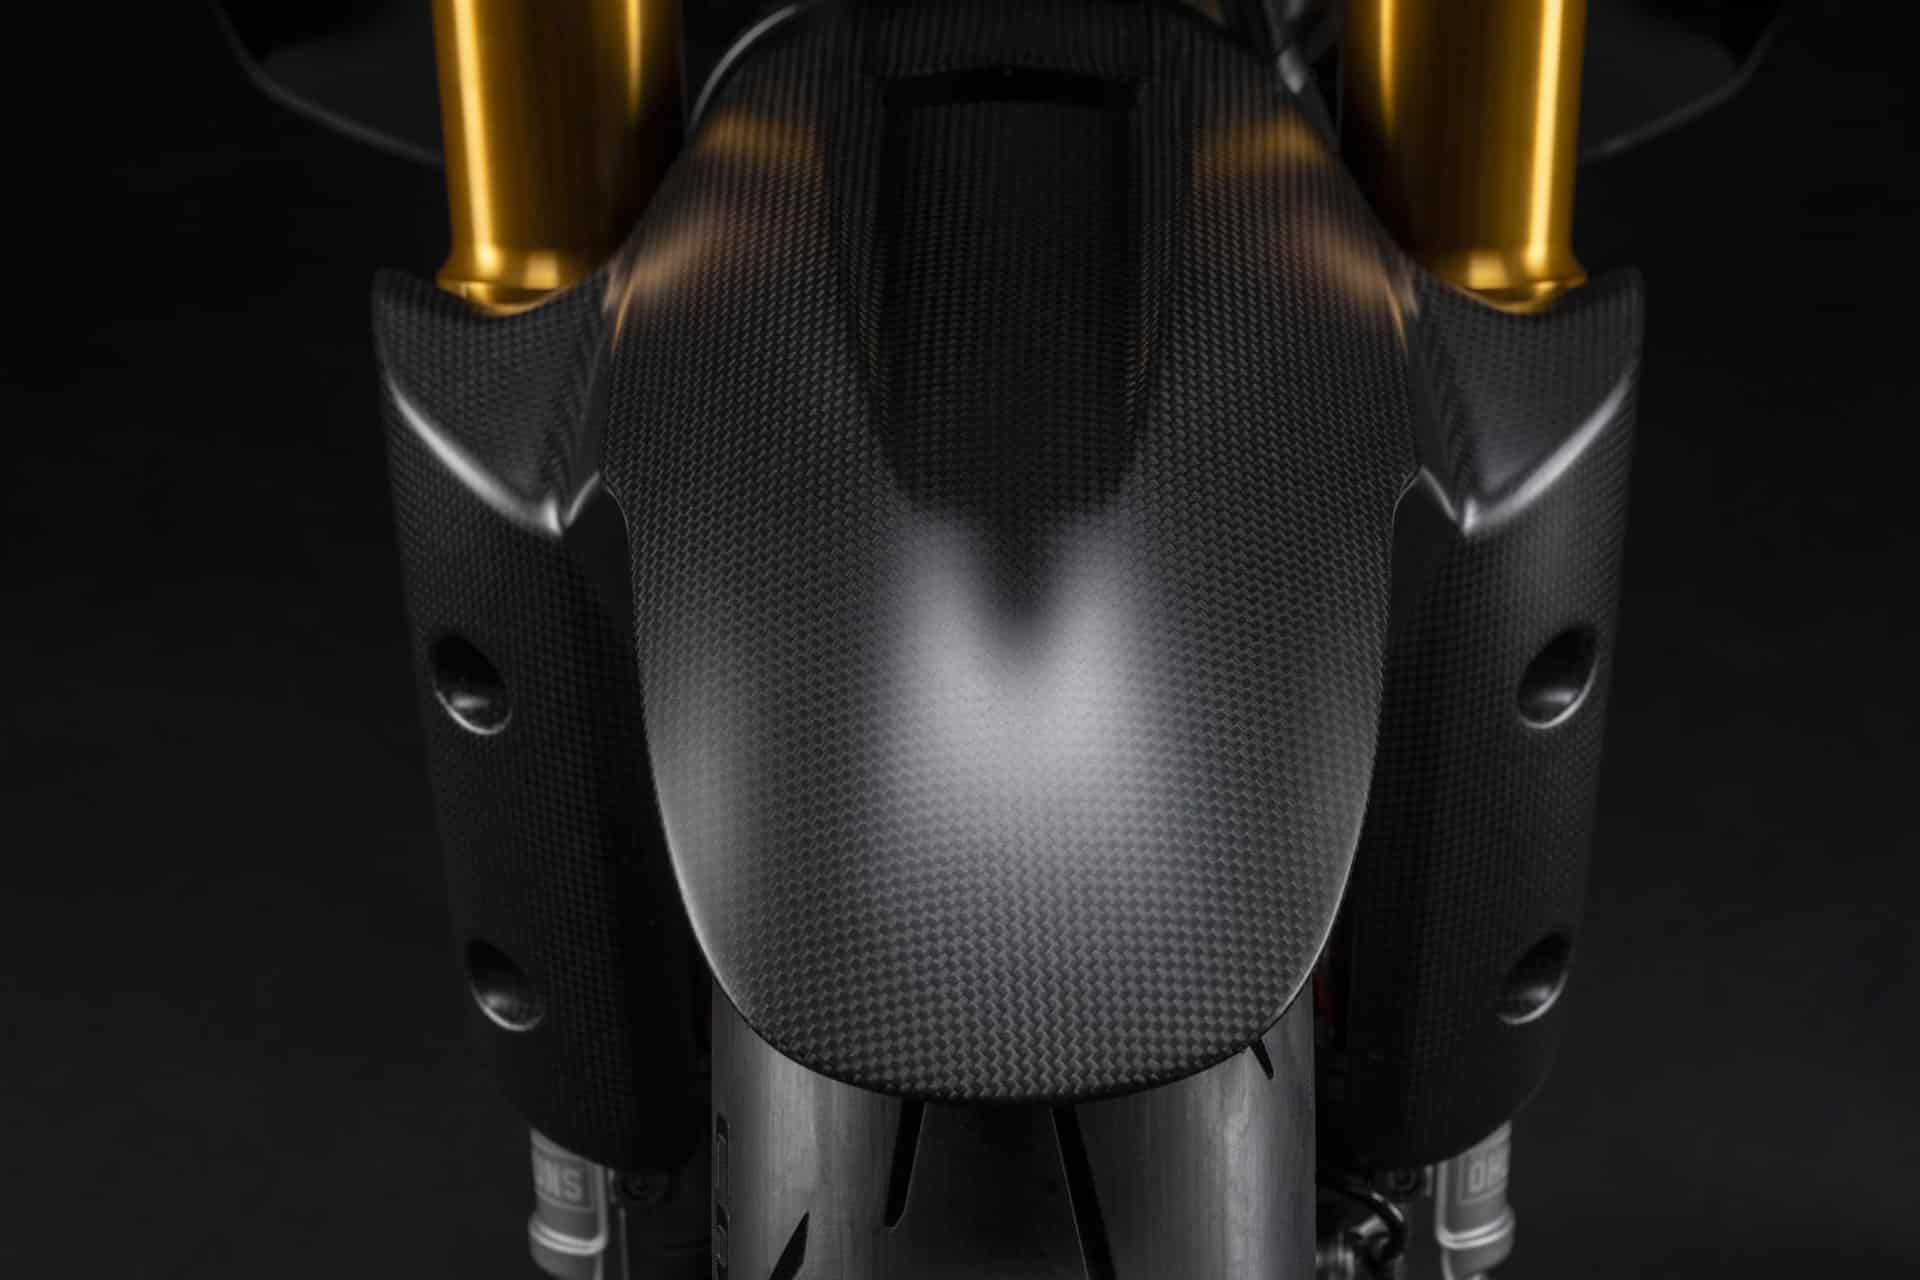 Ducati Multistrada V4 RS: Turismo prestacional "cuore sportivo"